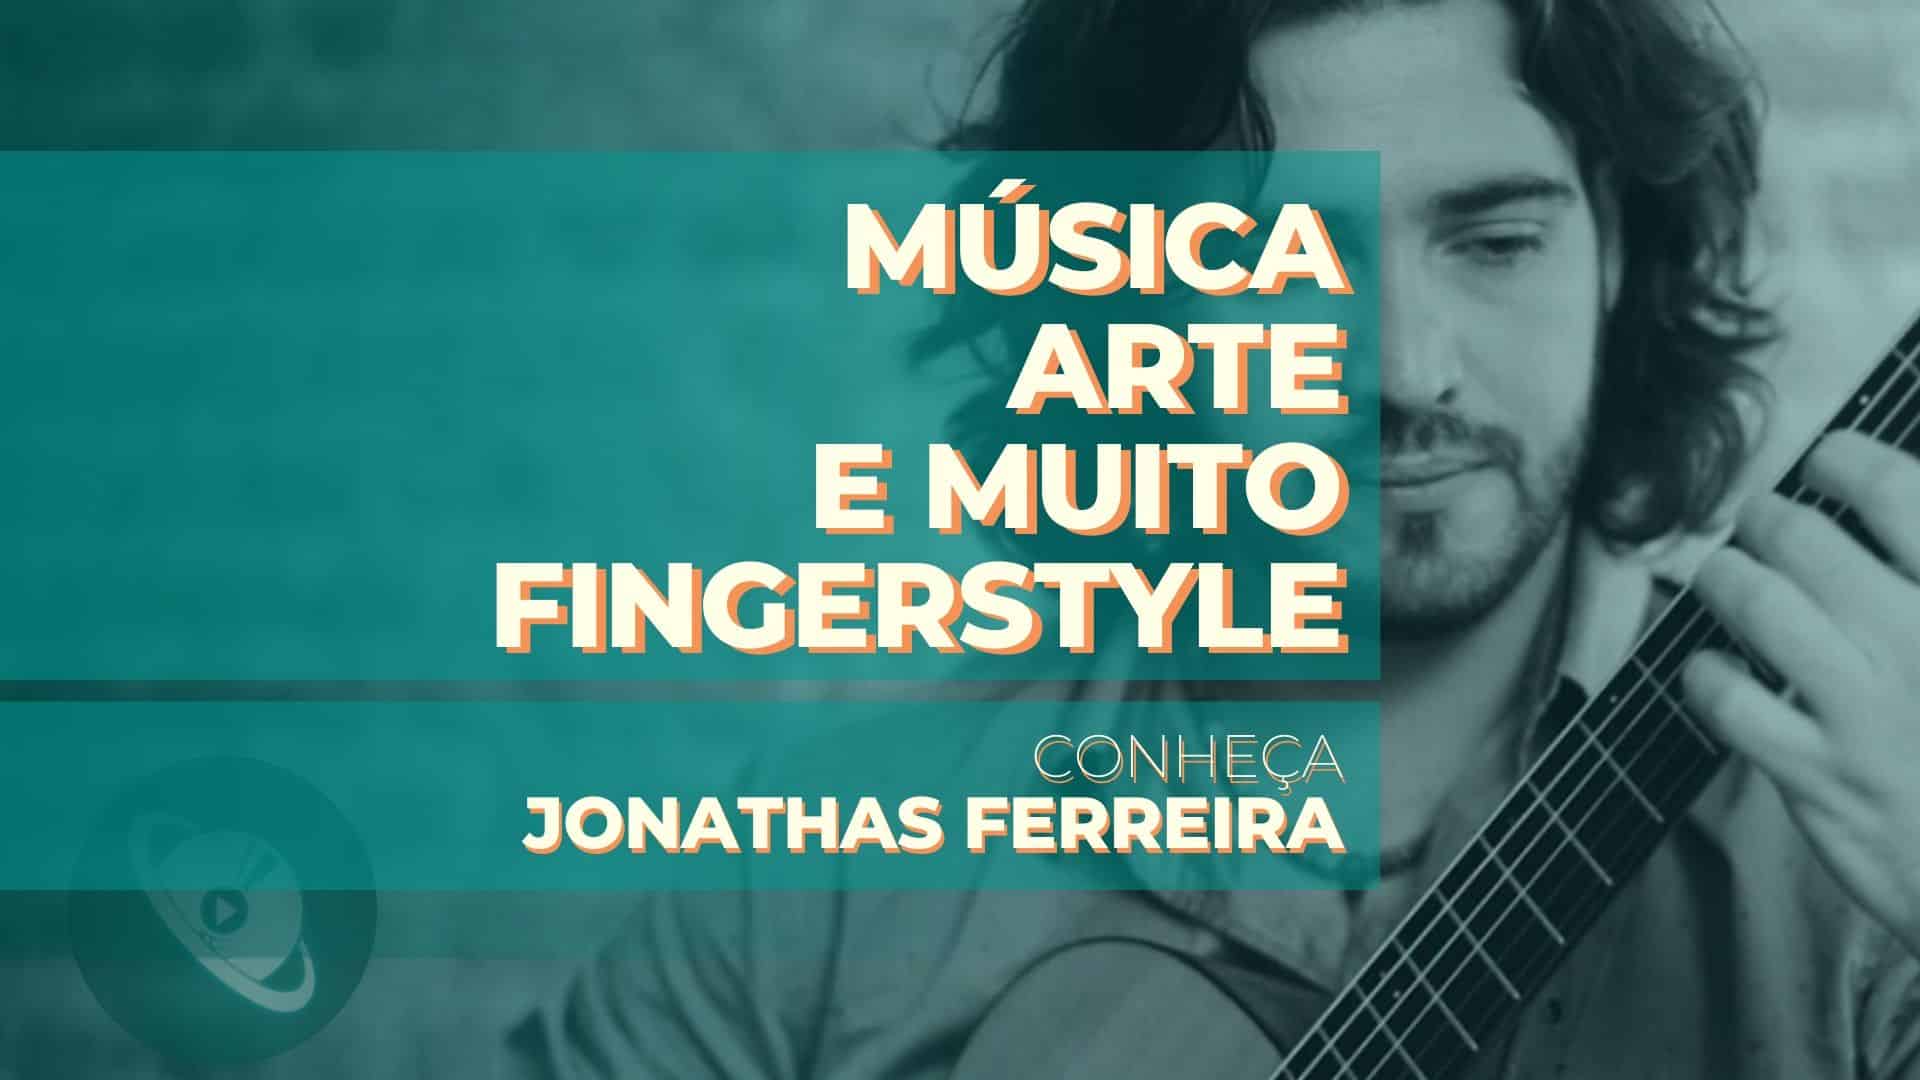 Música, Arte, e muito Fingerstyle! Conheça Jonathas Ferreira